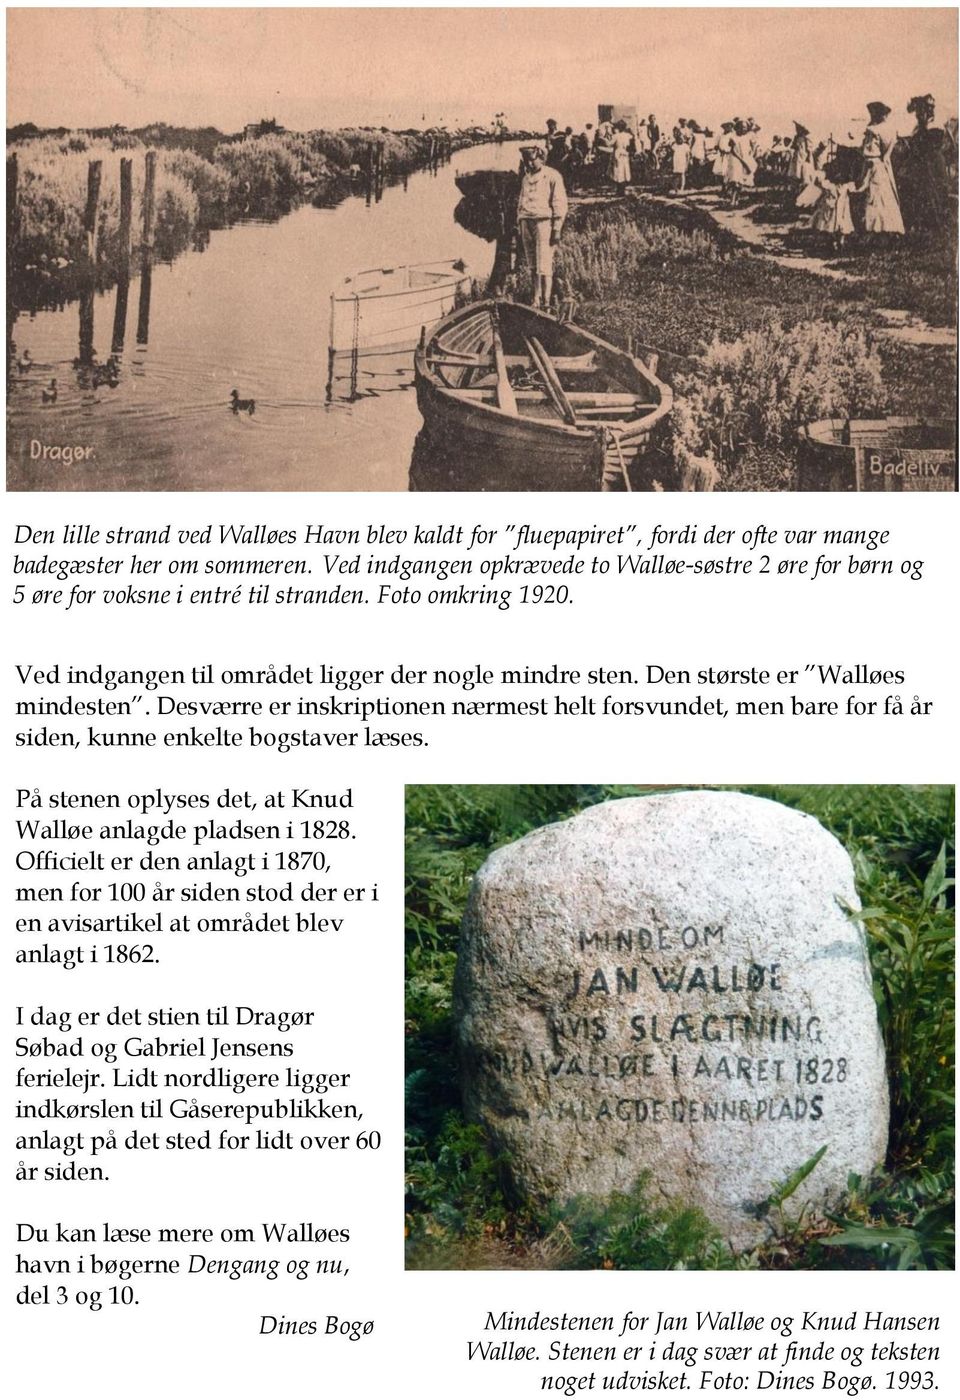 Den største er Walløes mindesten. Desværre er inskriptionen nærmest helt forsvundet, men bare for få år siden, kunne enkelte bogstaver læses.